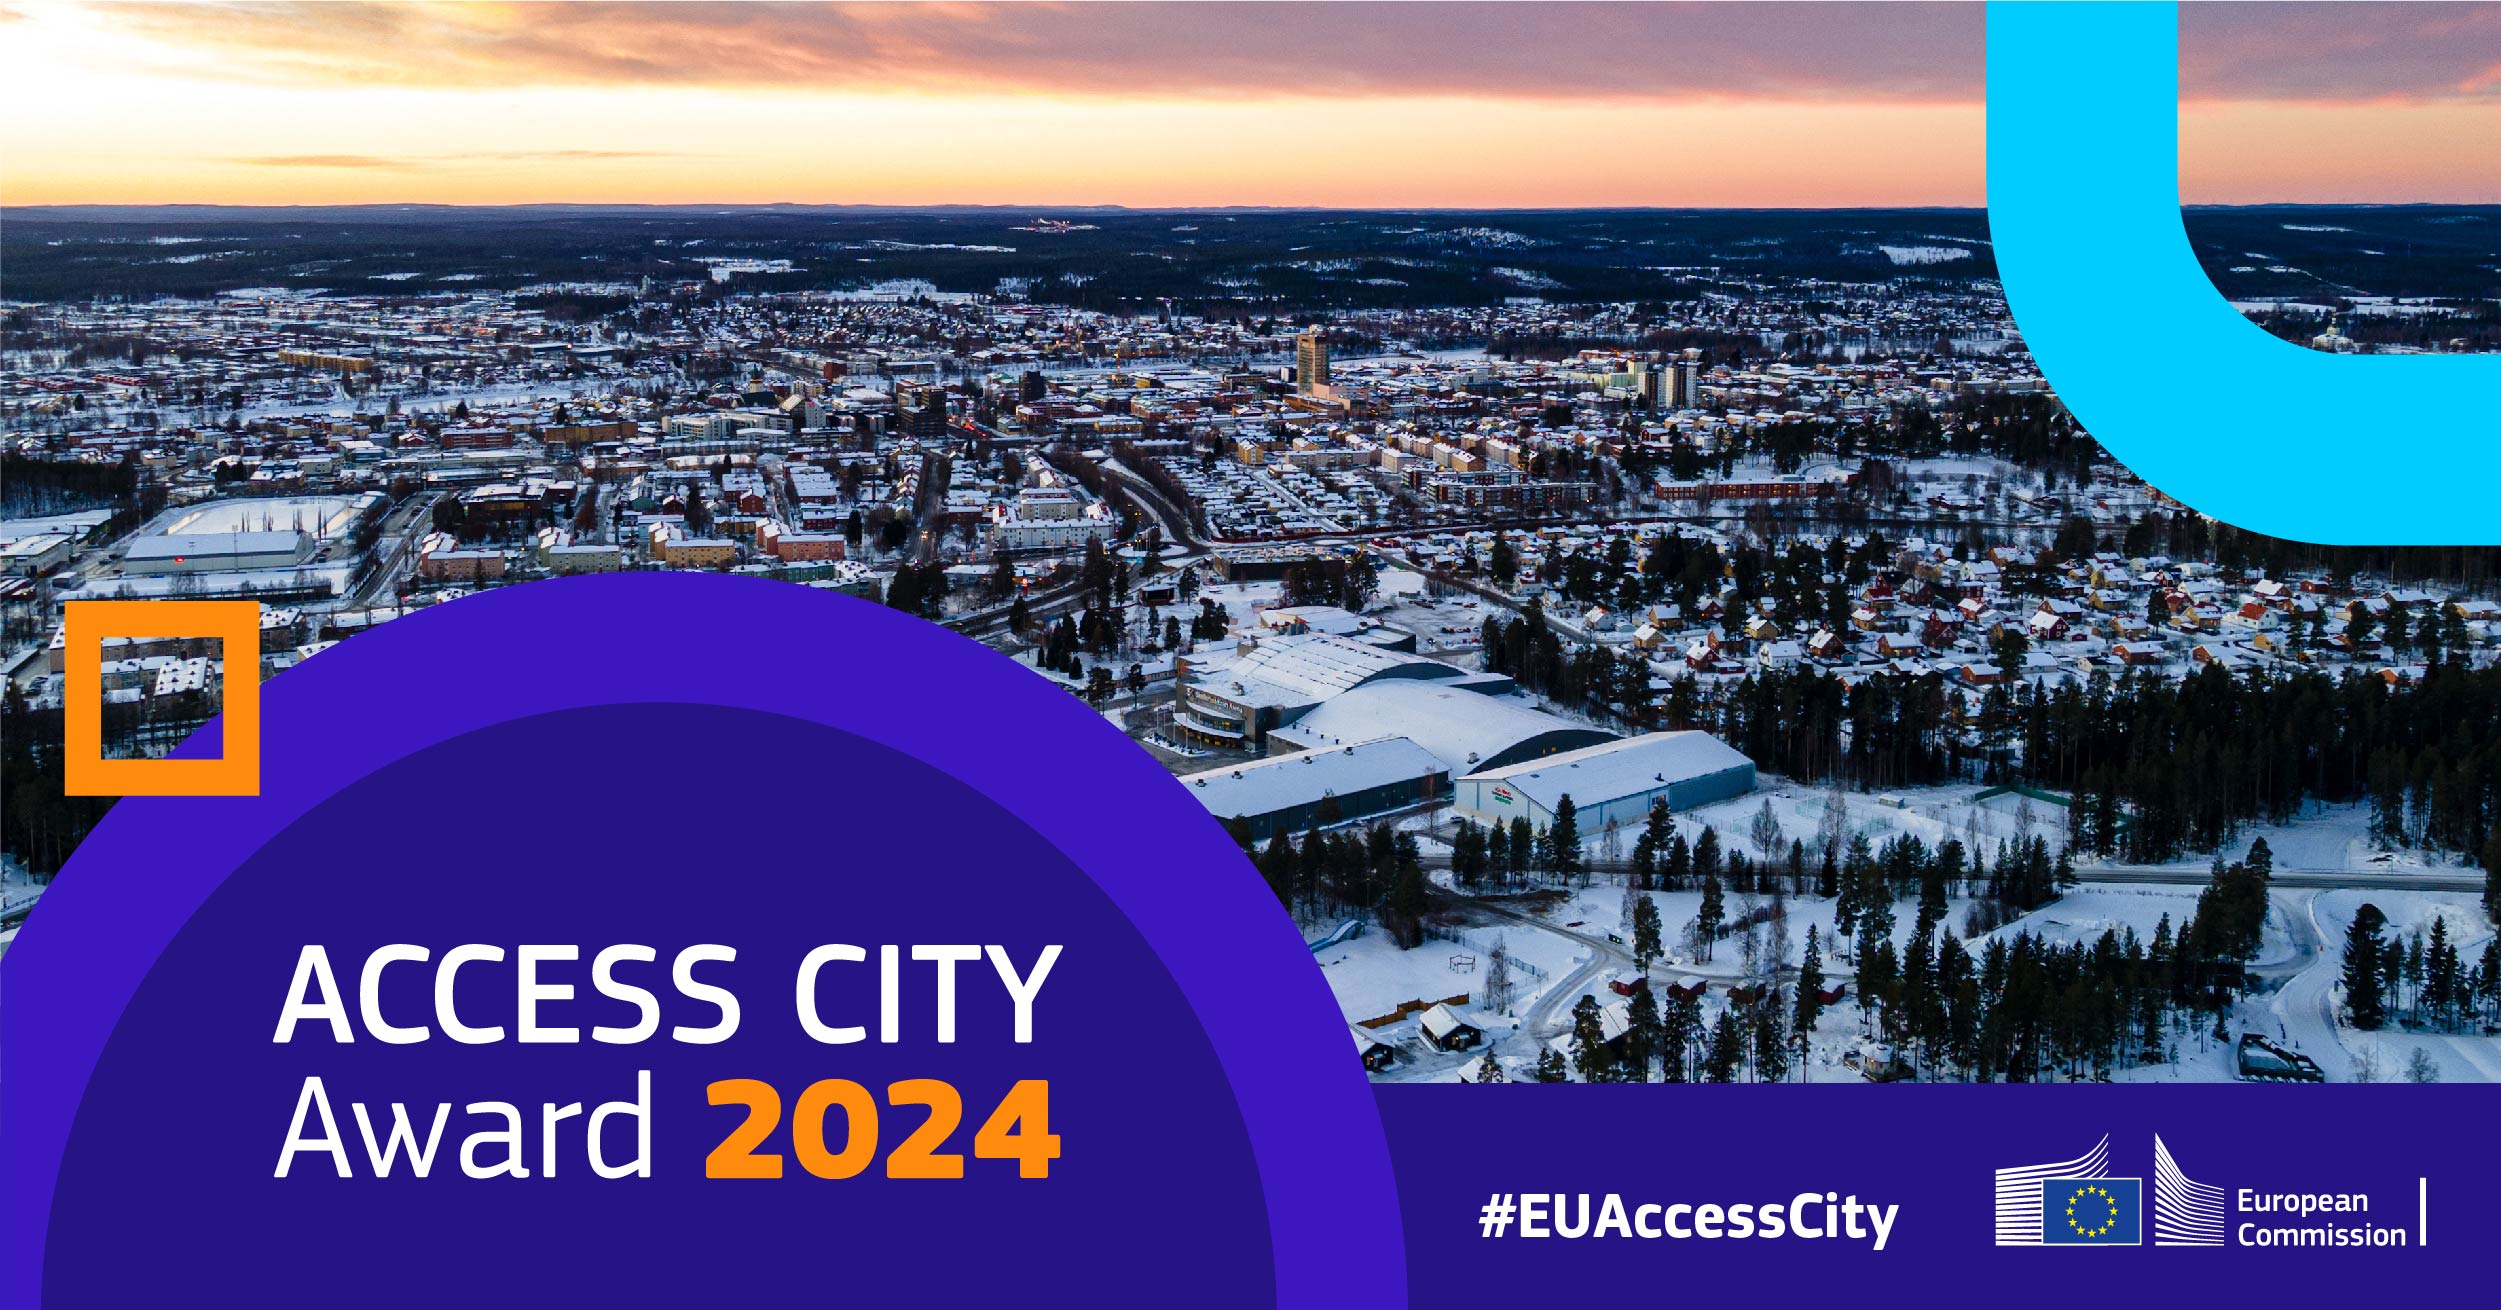  Access City Award 2023 Banner #EUAccessCity